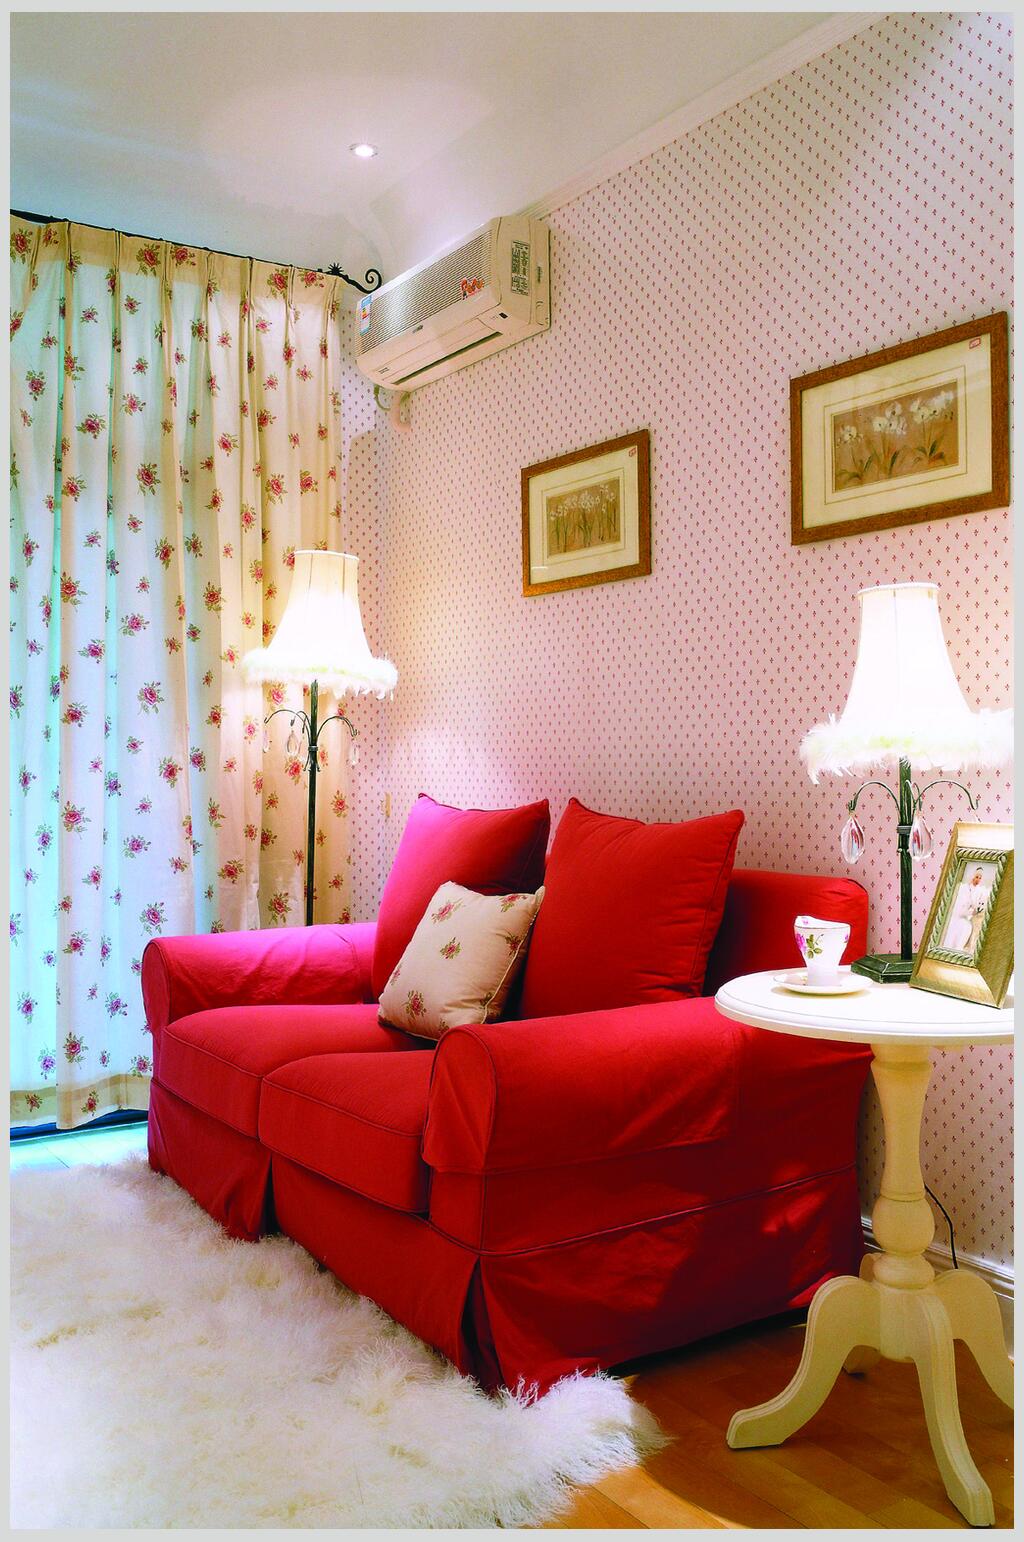 创意红色沙发装潢效果图素材